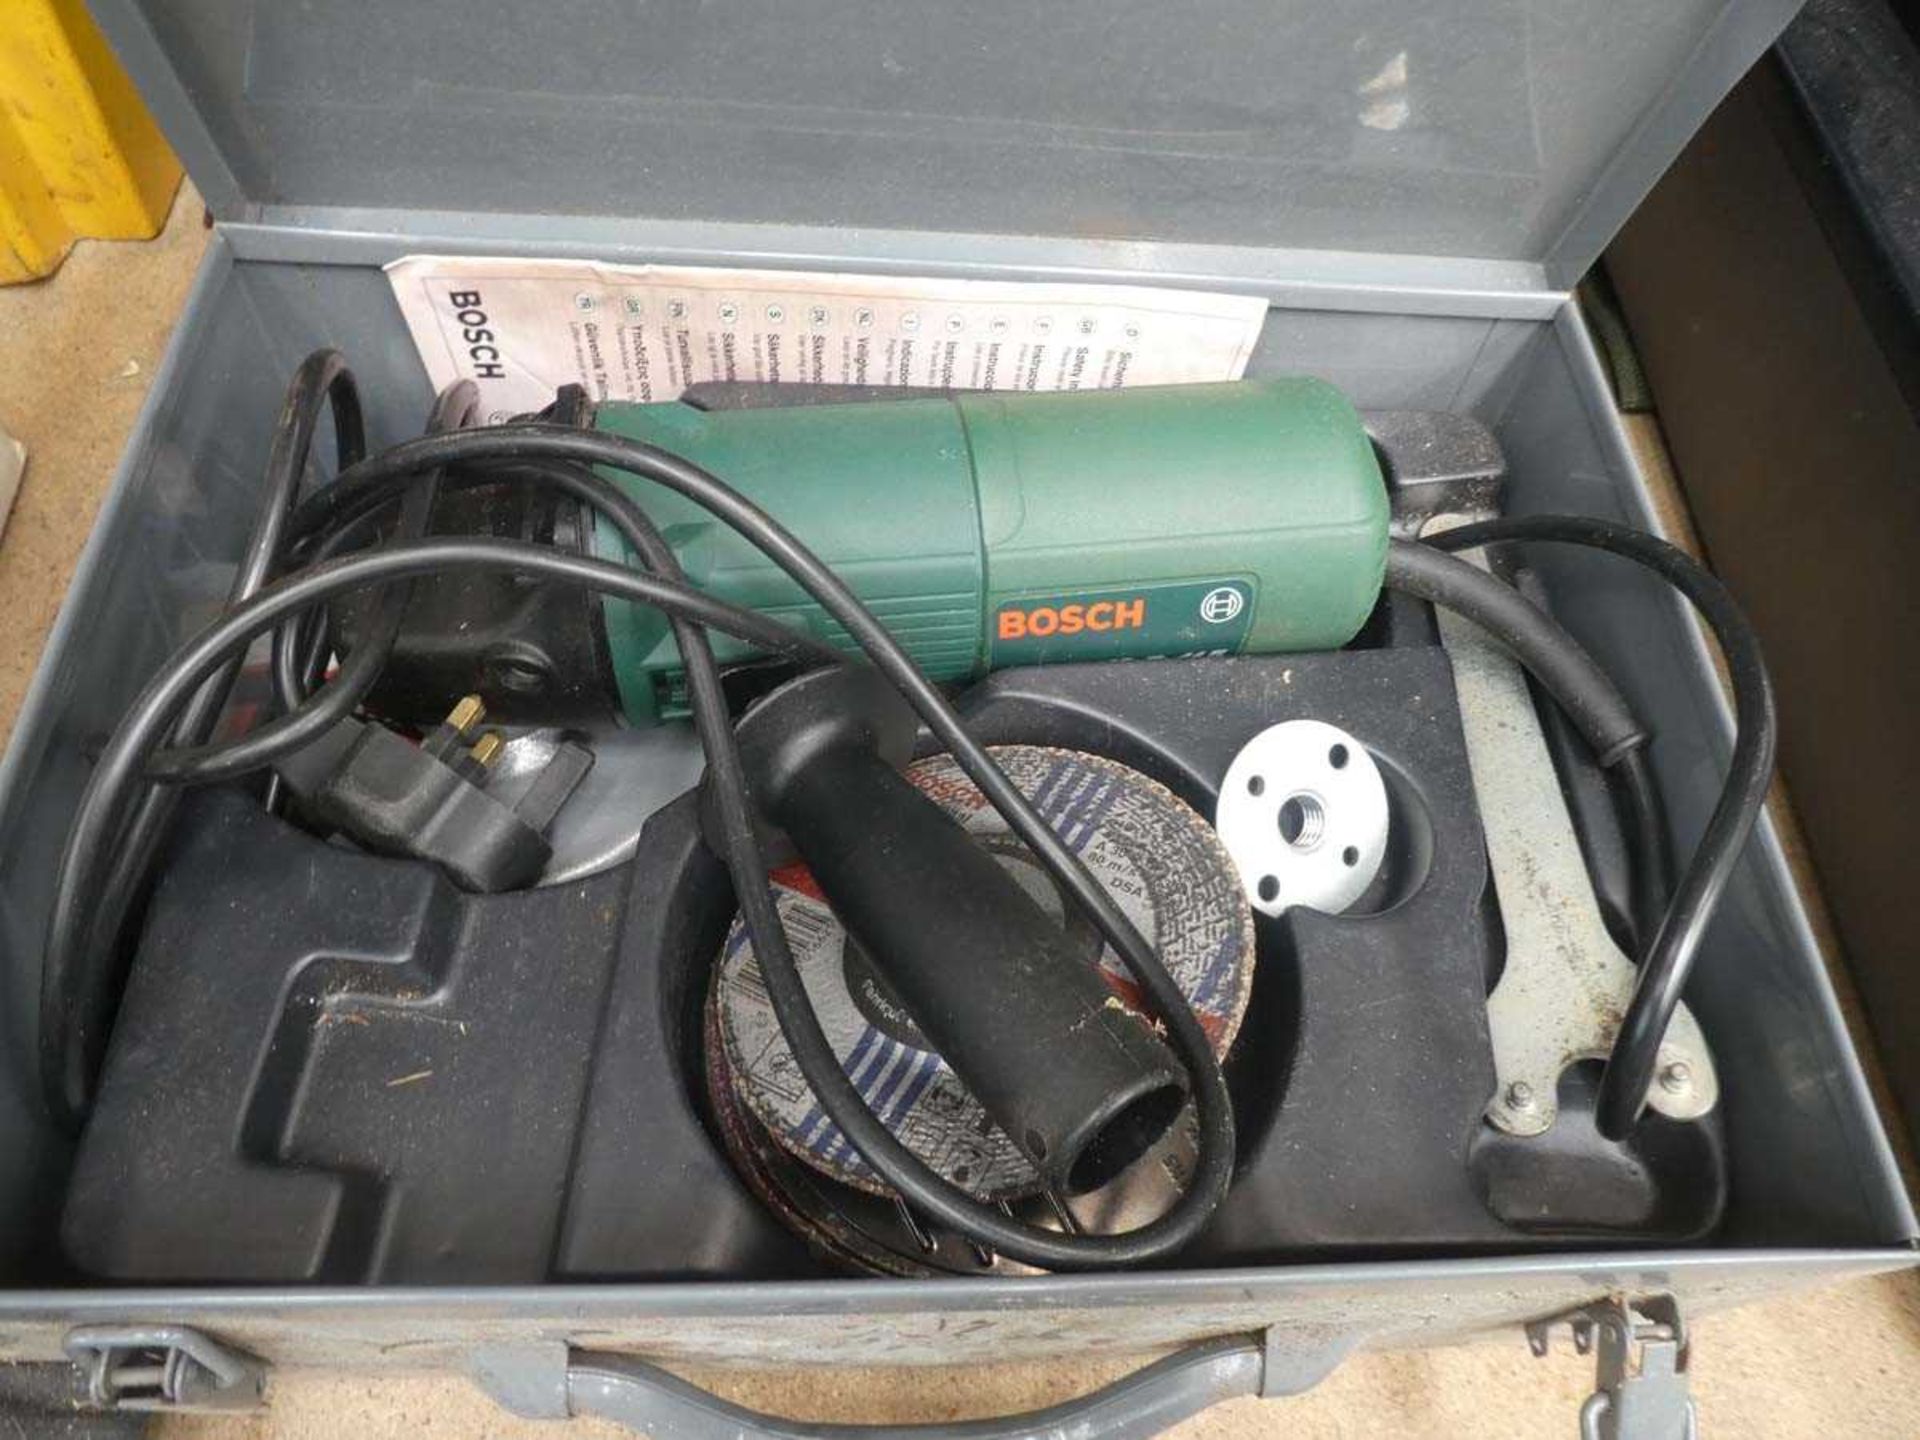 Bosch 240v grinder in metal carry case